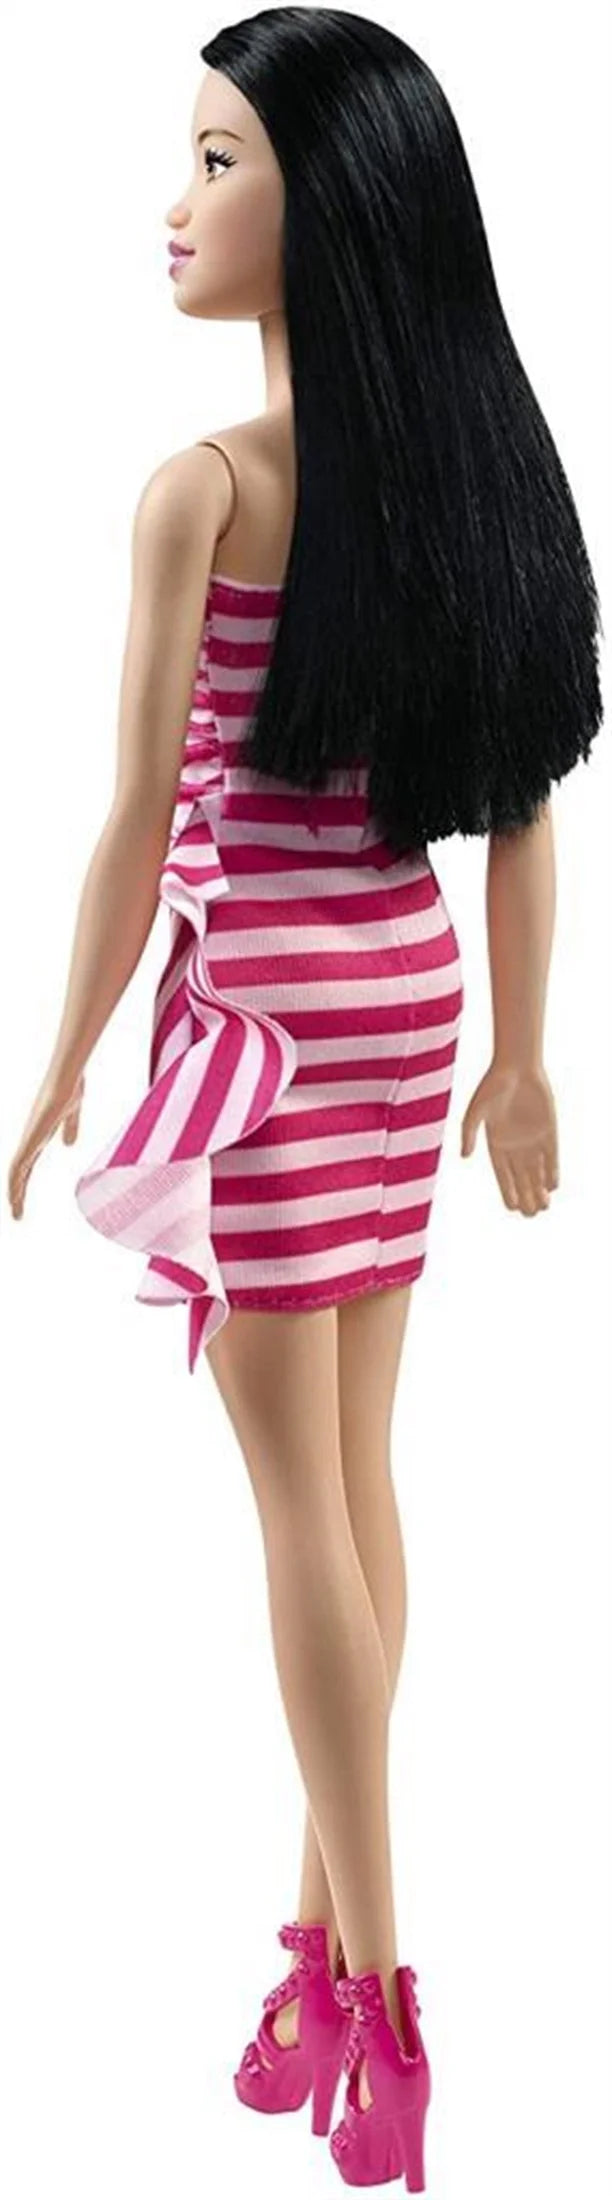 Barbie Pırıltı Barbie Bebekler T7580-FXL70 | Toysall